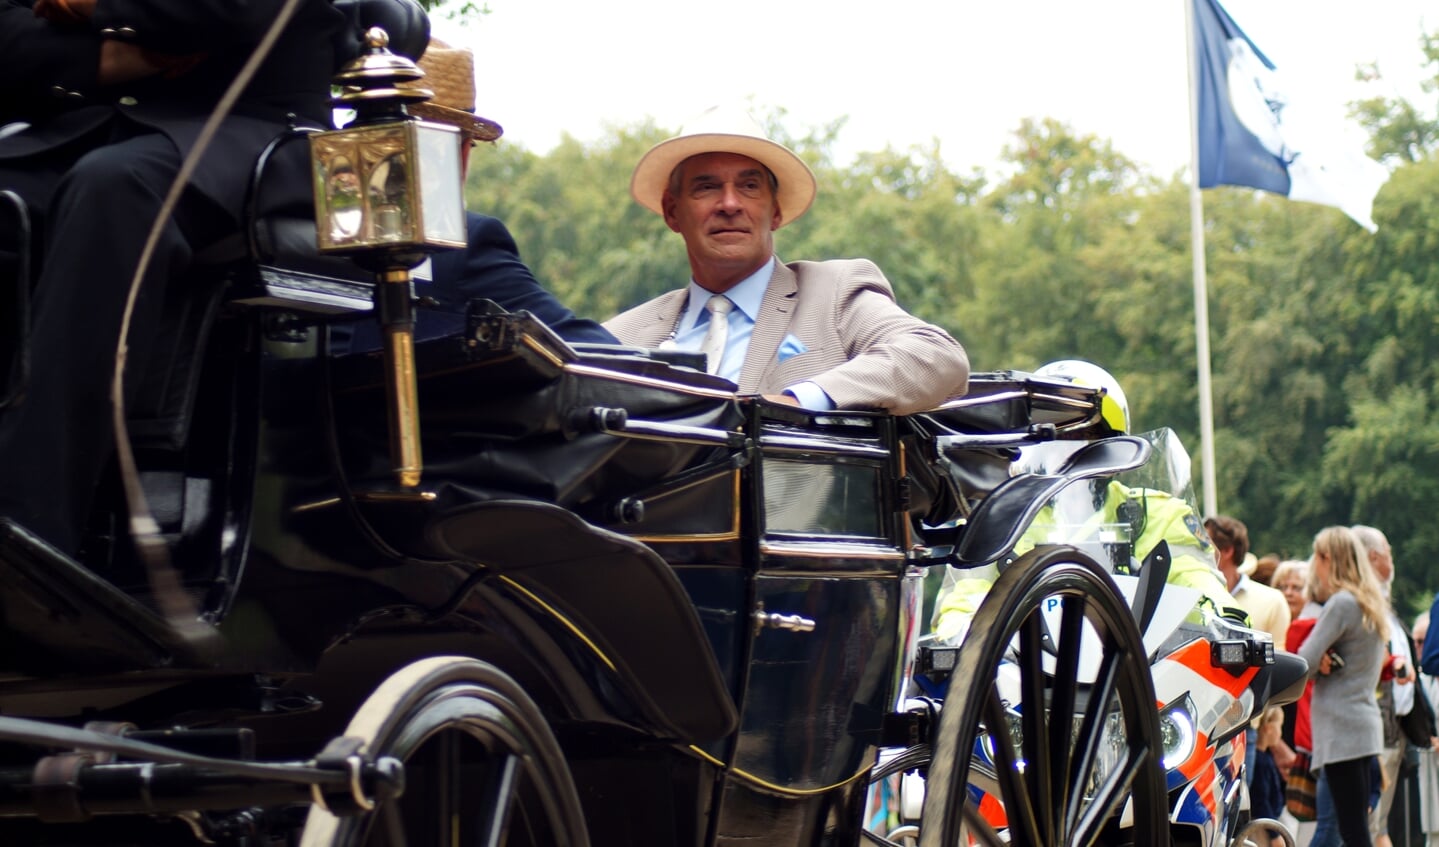 Burgemeester Frits Naafs rijdt ieder jaar traditioneel mee met zijn eigen gasten. 